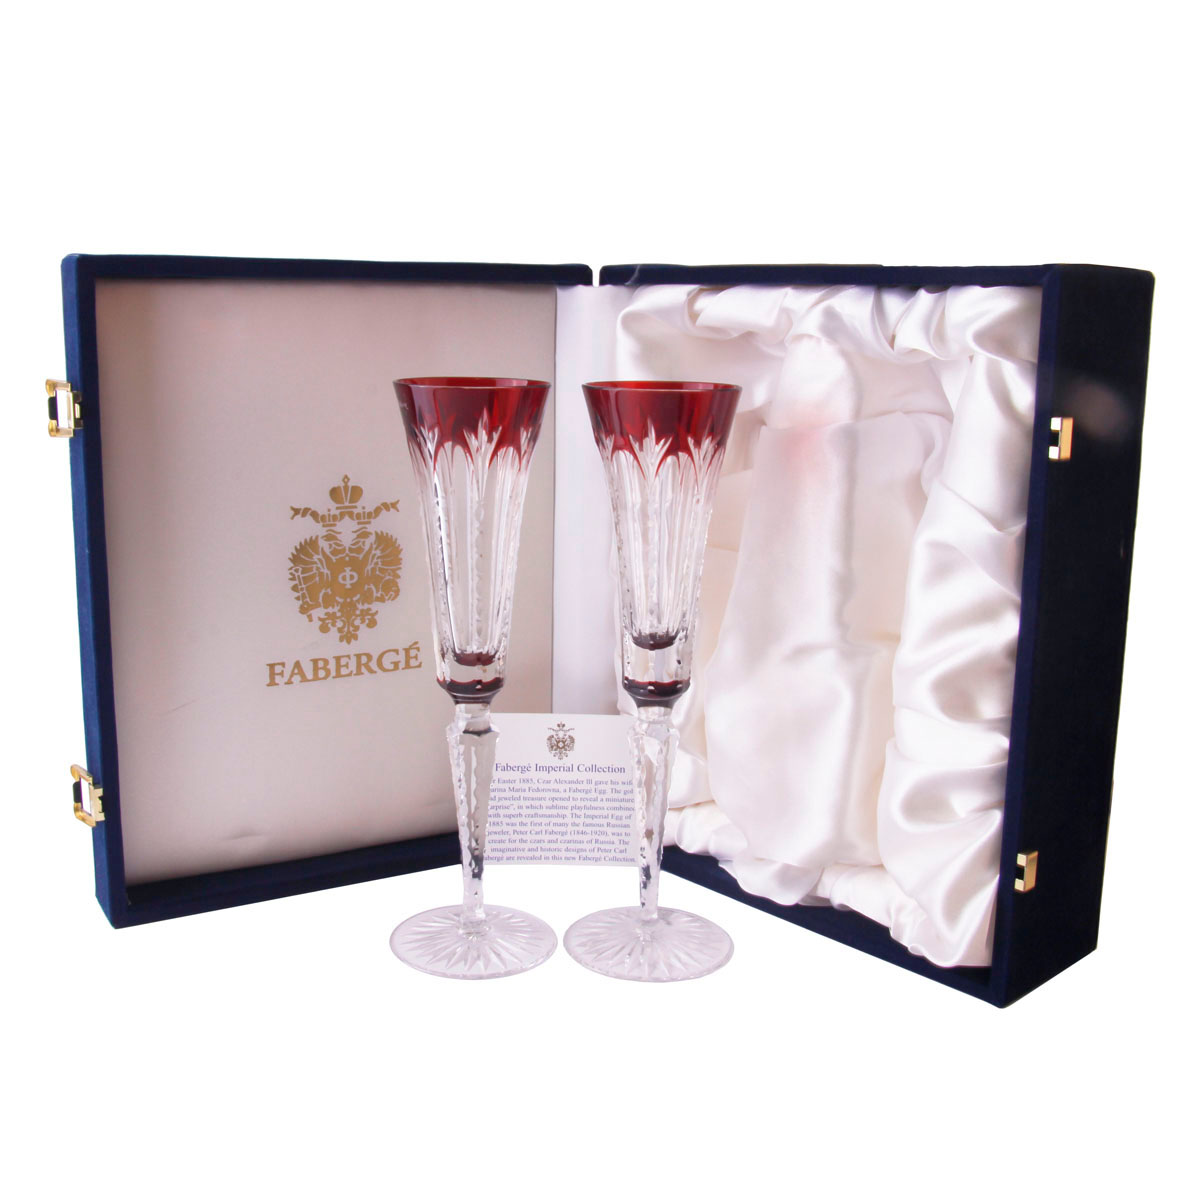 Бокалы для шампанского. Хрусталь, гранение, гравировка. Faberge, Франция, конец XX века